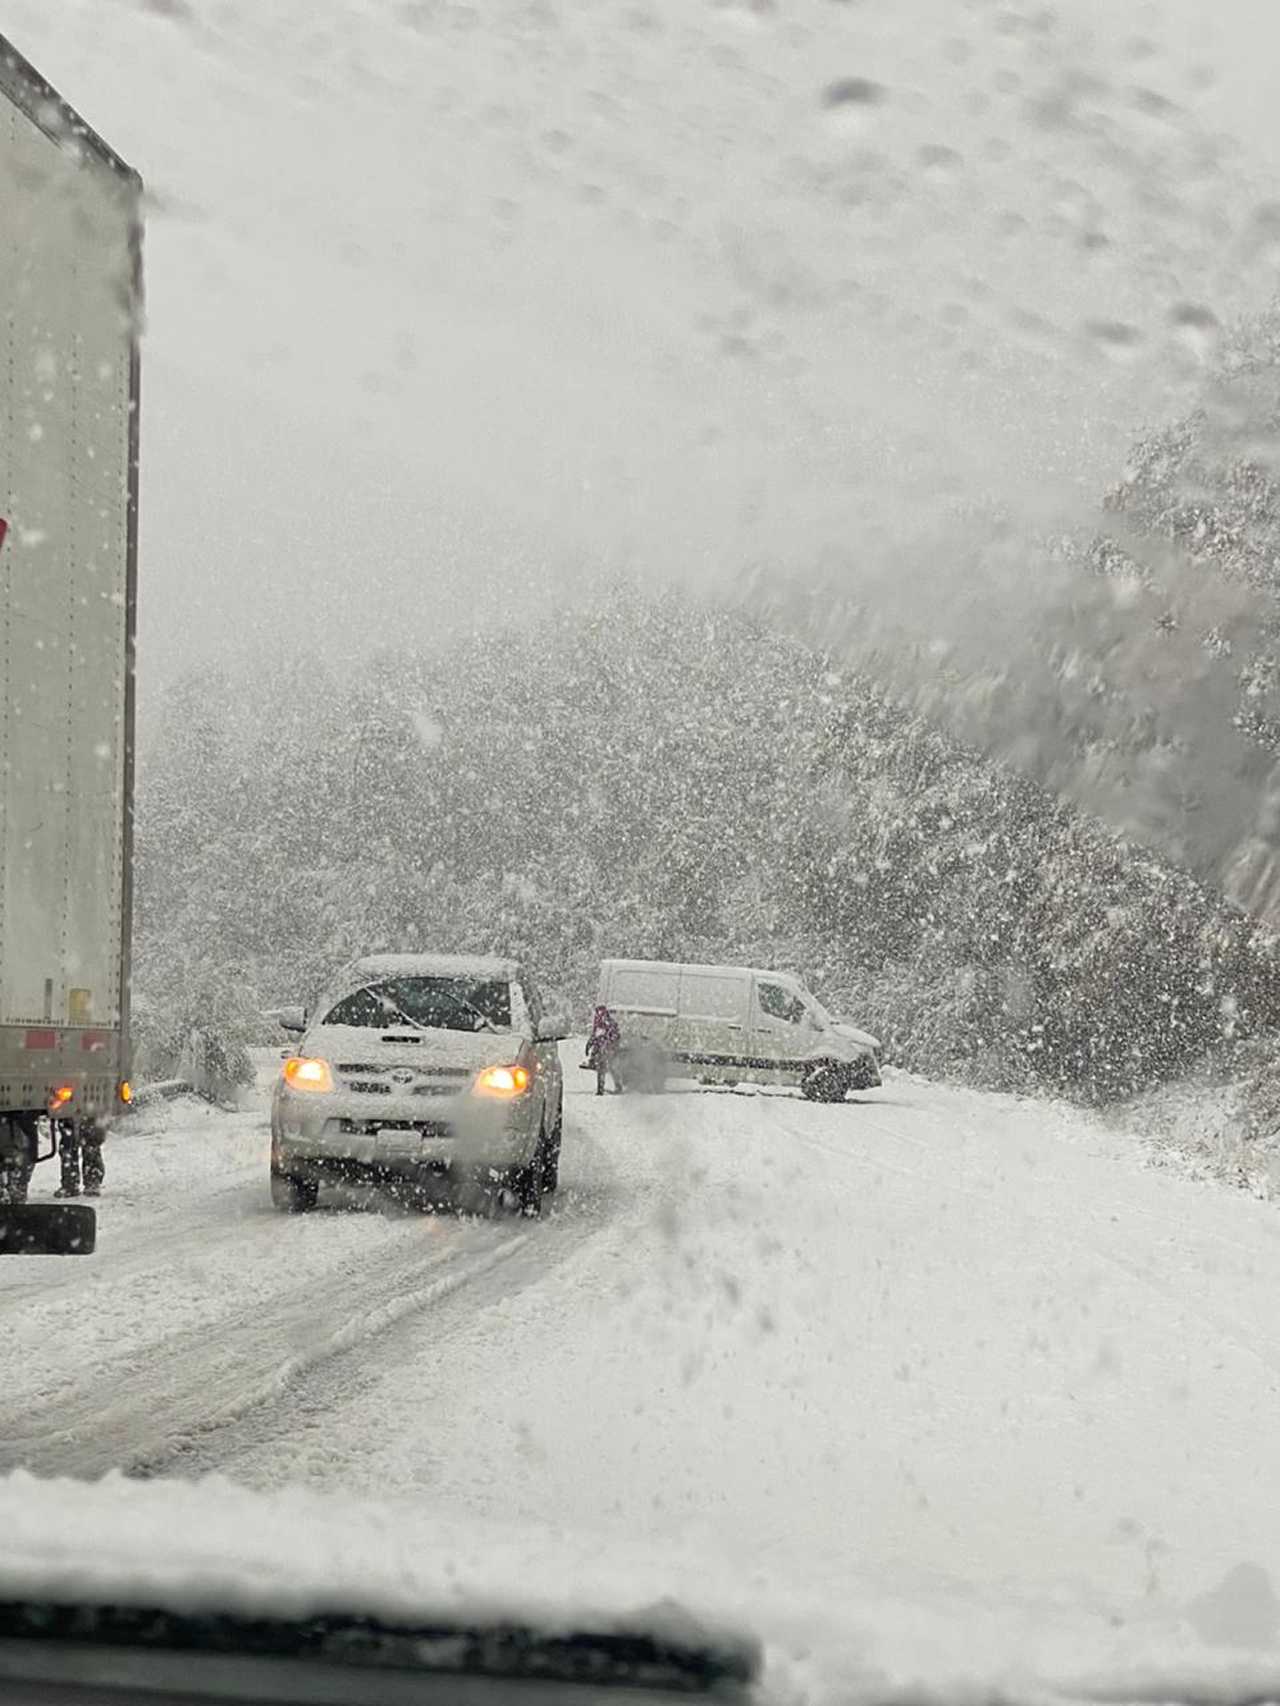 Alerta por nieve y viento de hasta 100 km/h en Neuquén, este lunes y martes